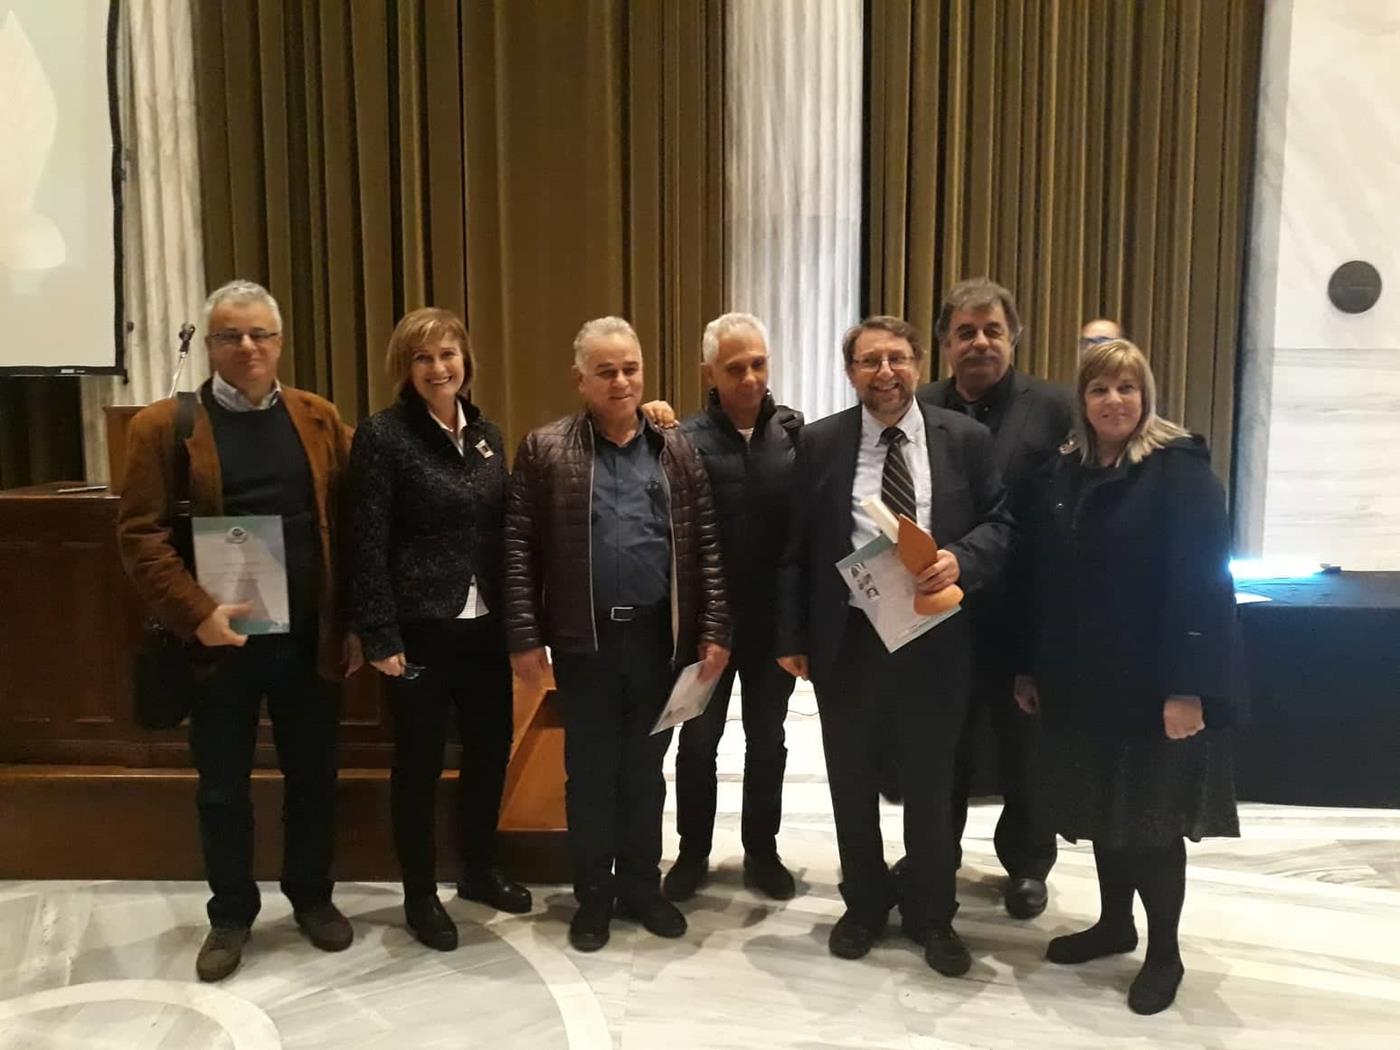 Περιβαλλοντικό βραβείο στο δήμο Λαρισαίων για την ανάπλαση των δρόμων στο κέντρο της πόλης